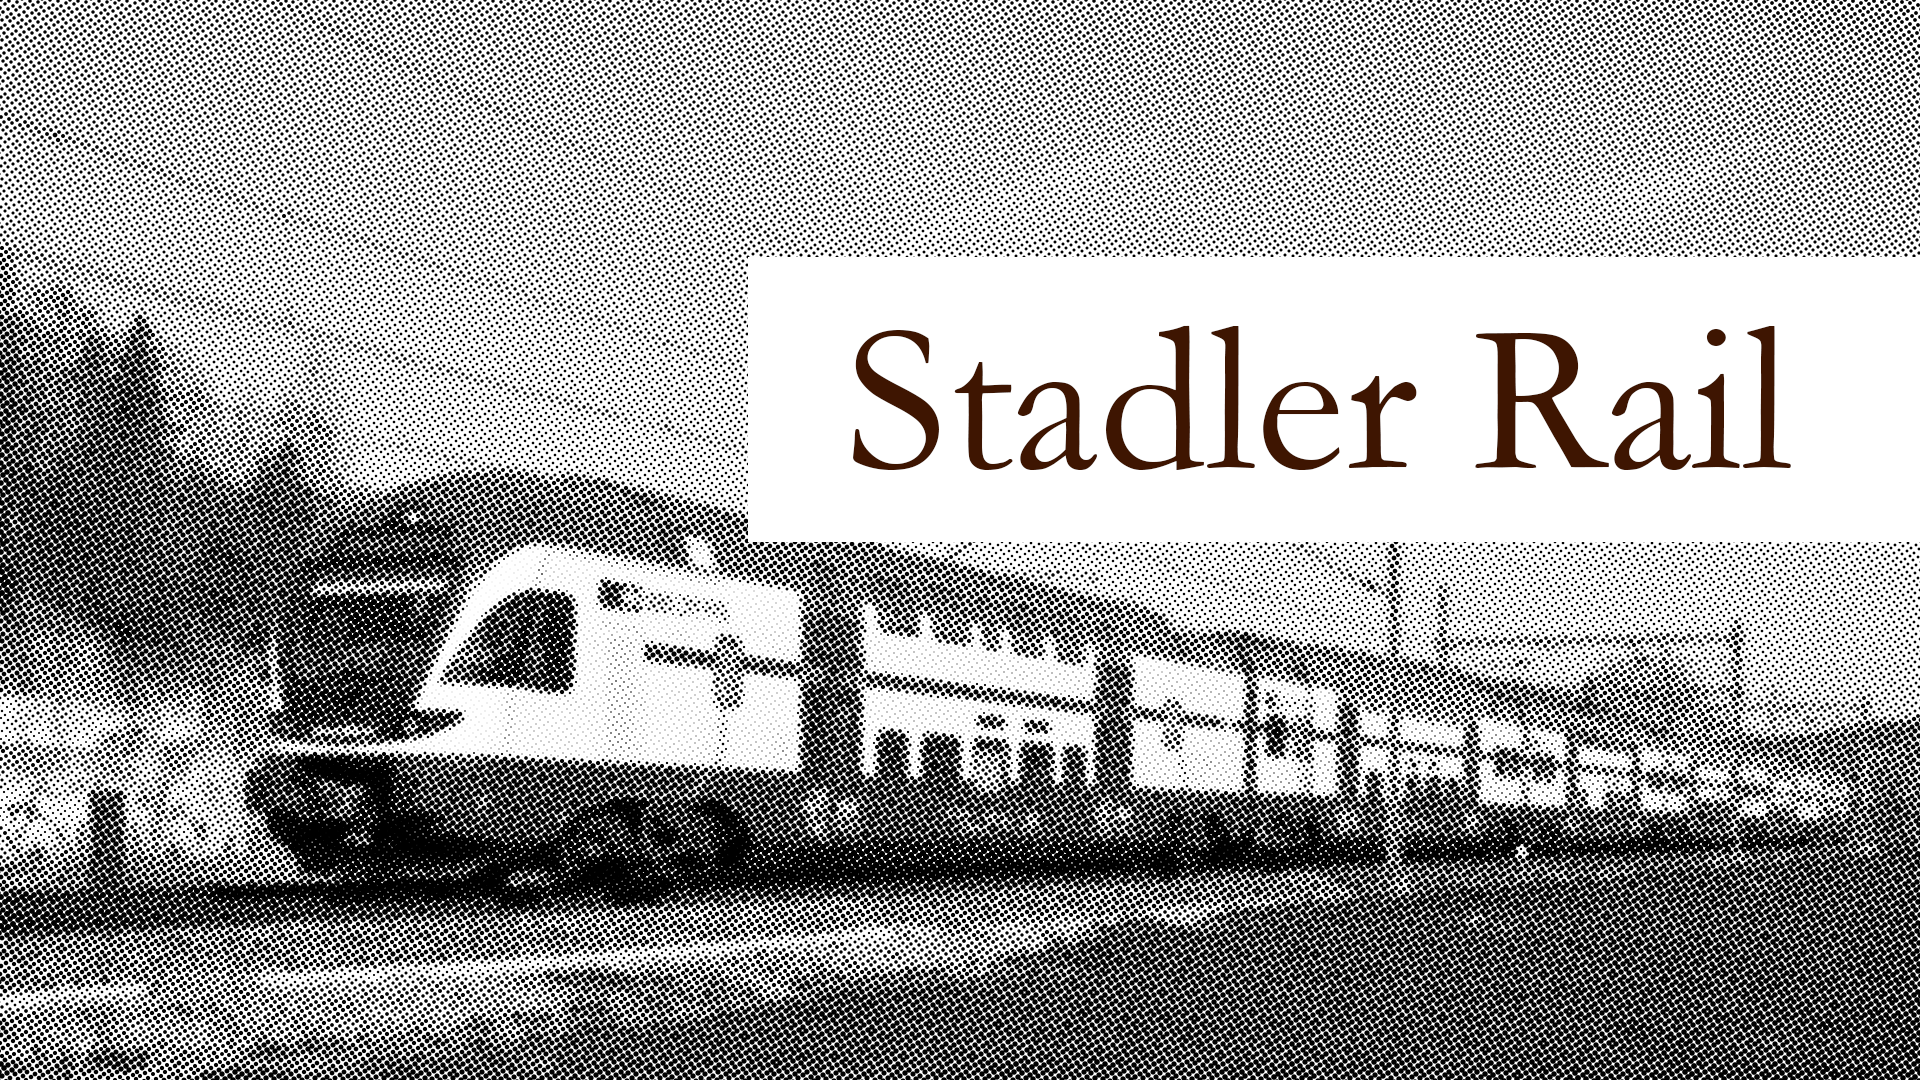 Stadler Rail für die bewährte Qualität auf den europäischen Bahnen